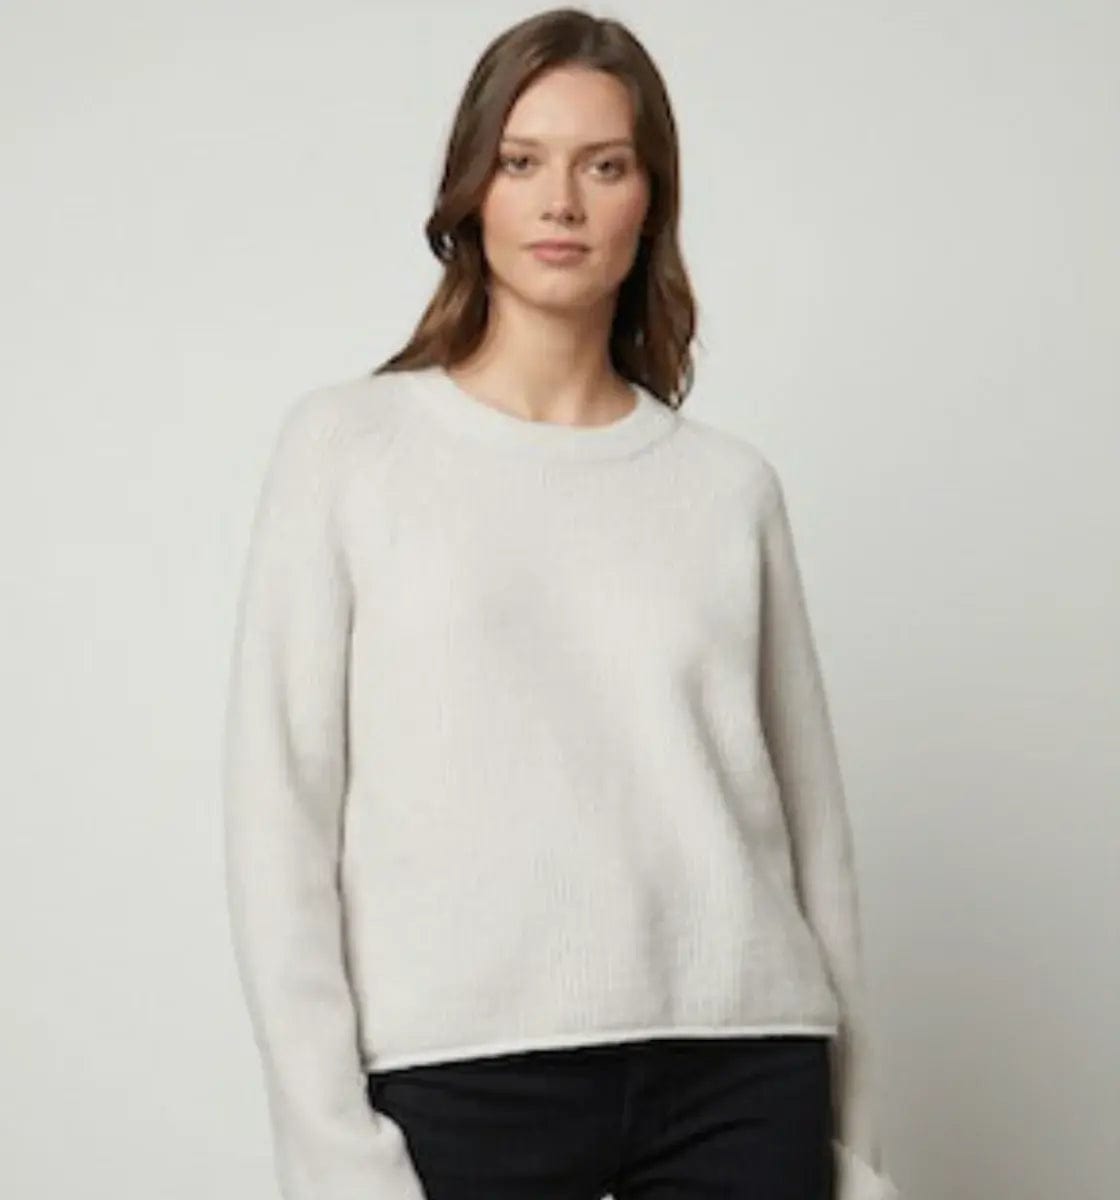 Velvet Sweaters Velvet - Britt Cardigan sweater in Snow